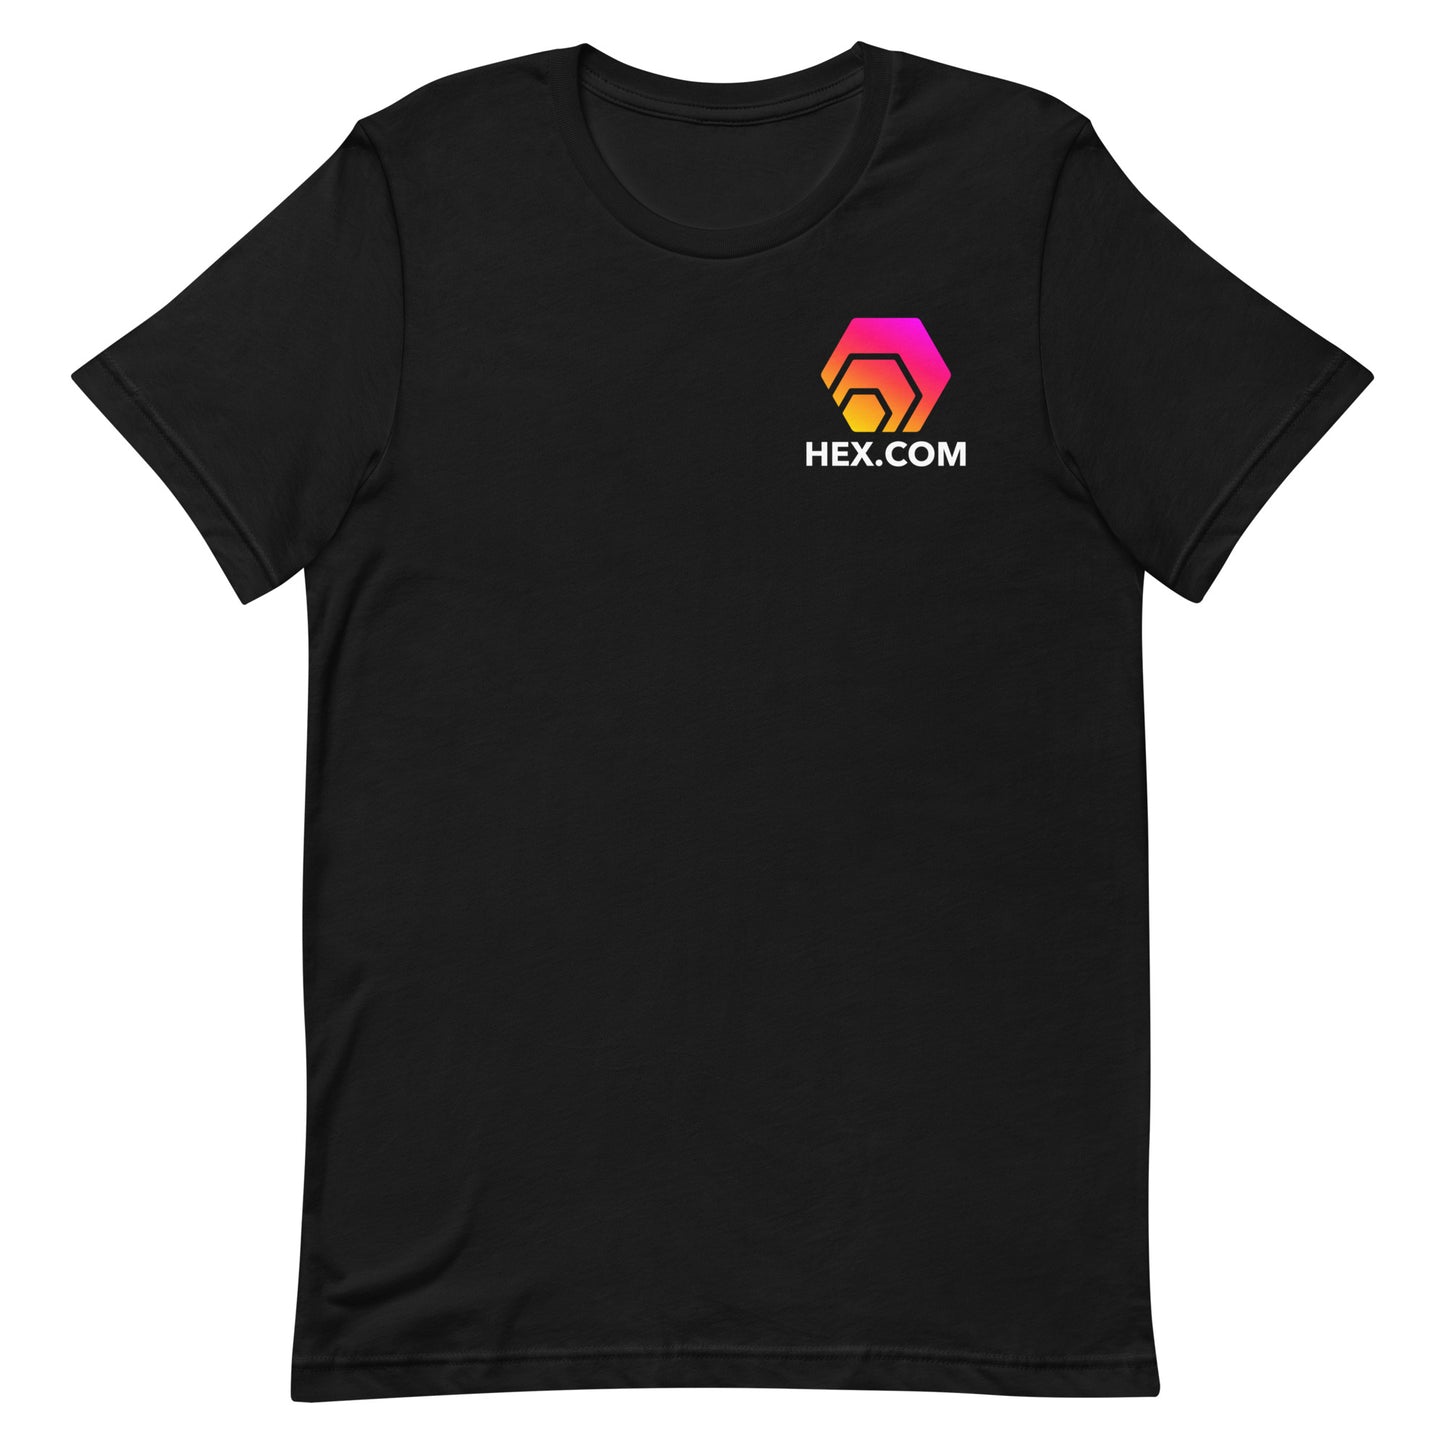 HEX.COM T-Shirt (Front & Back) Sale!